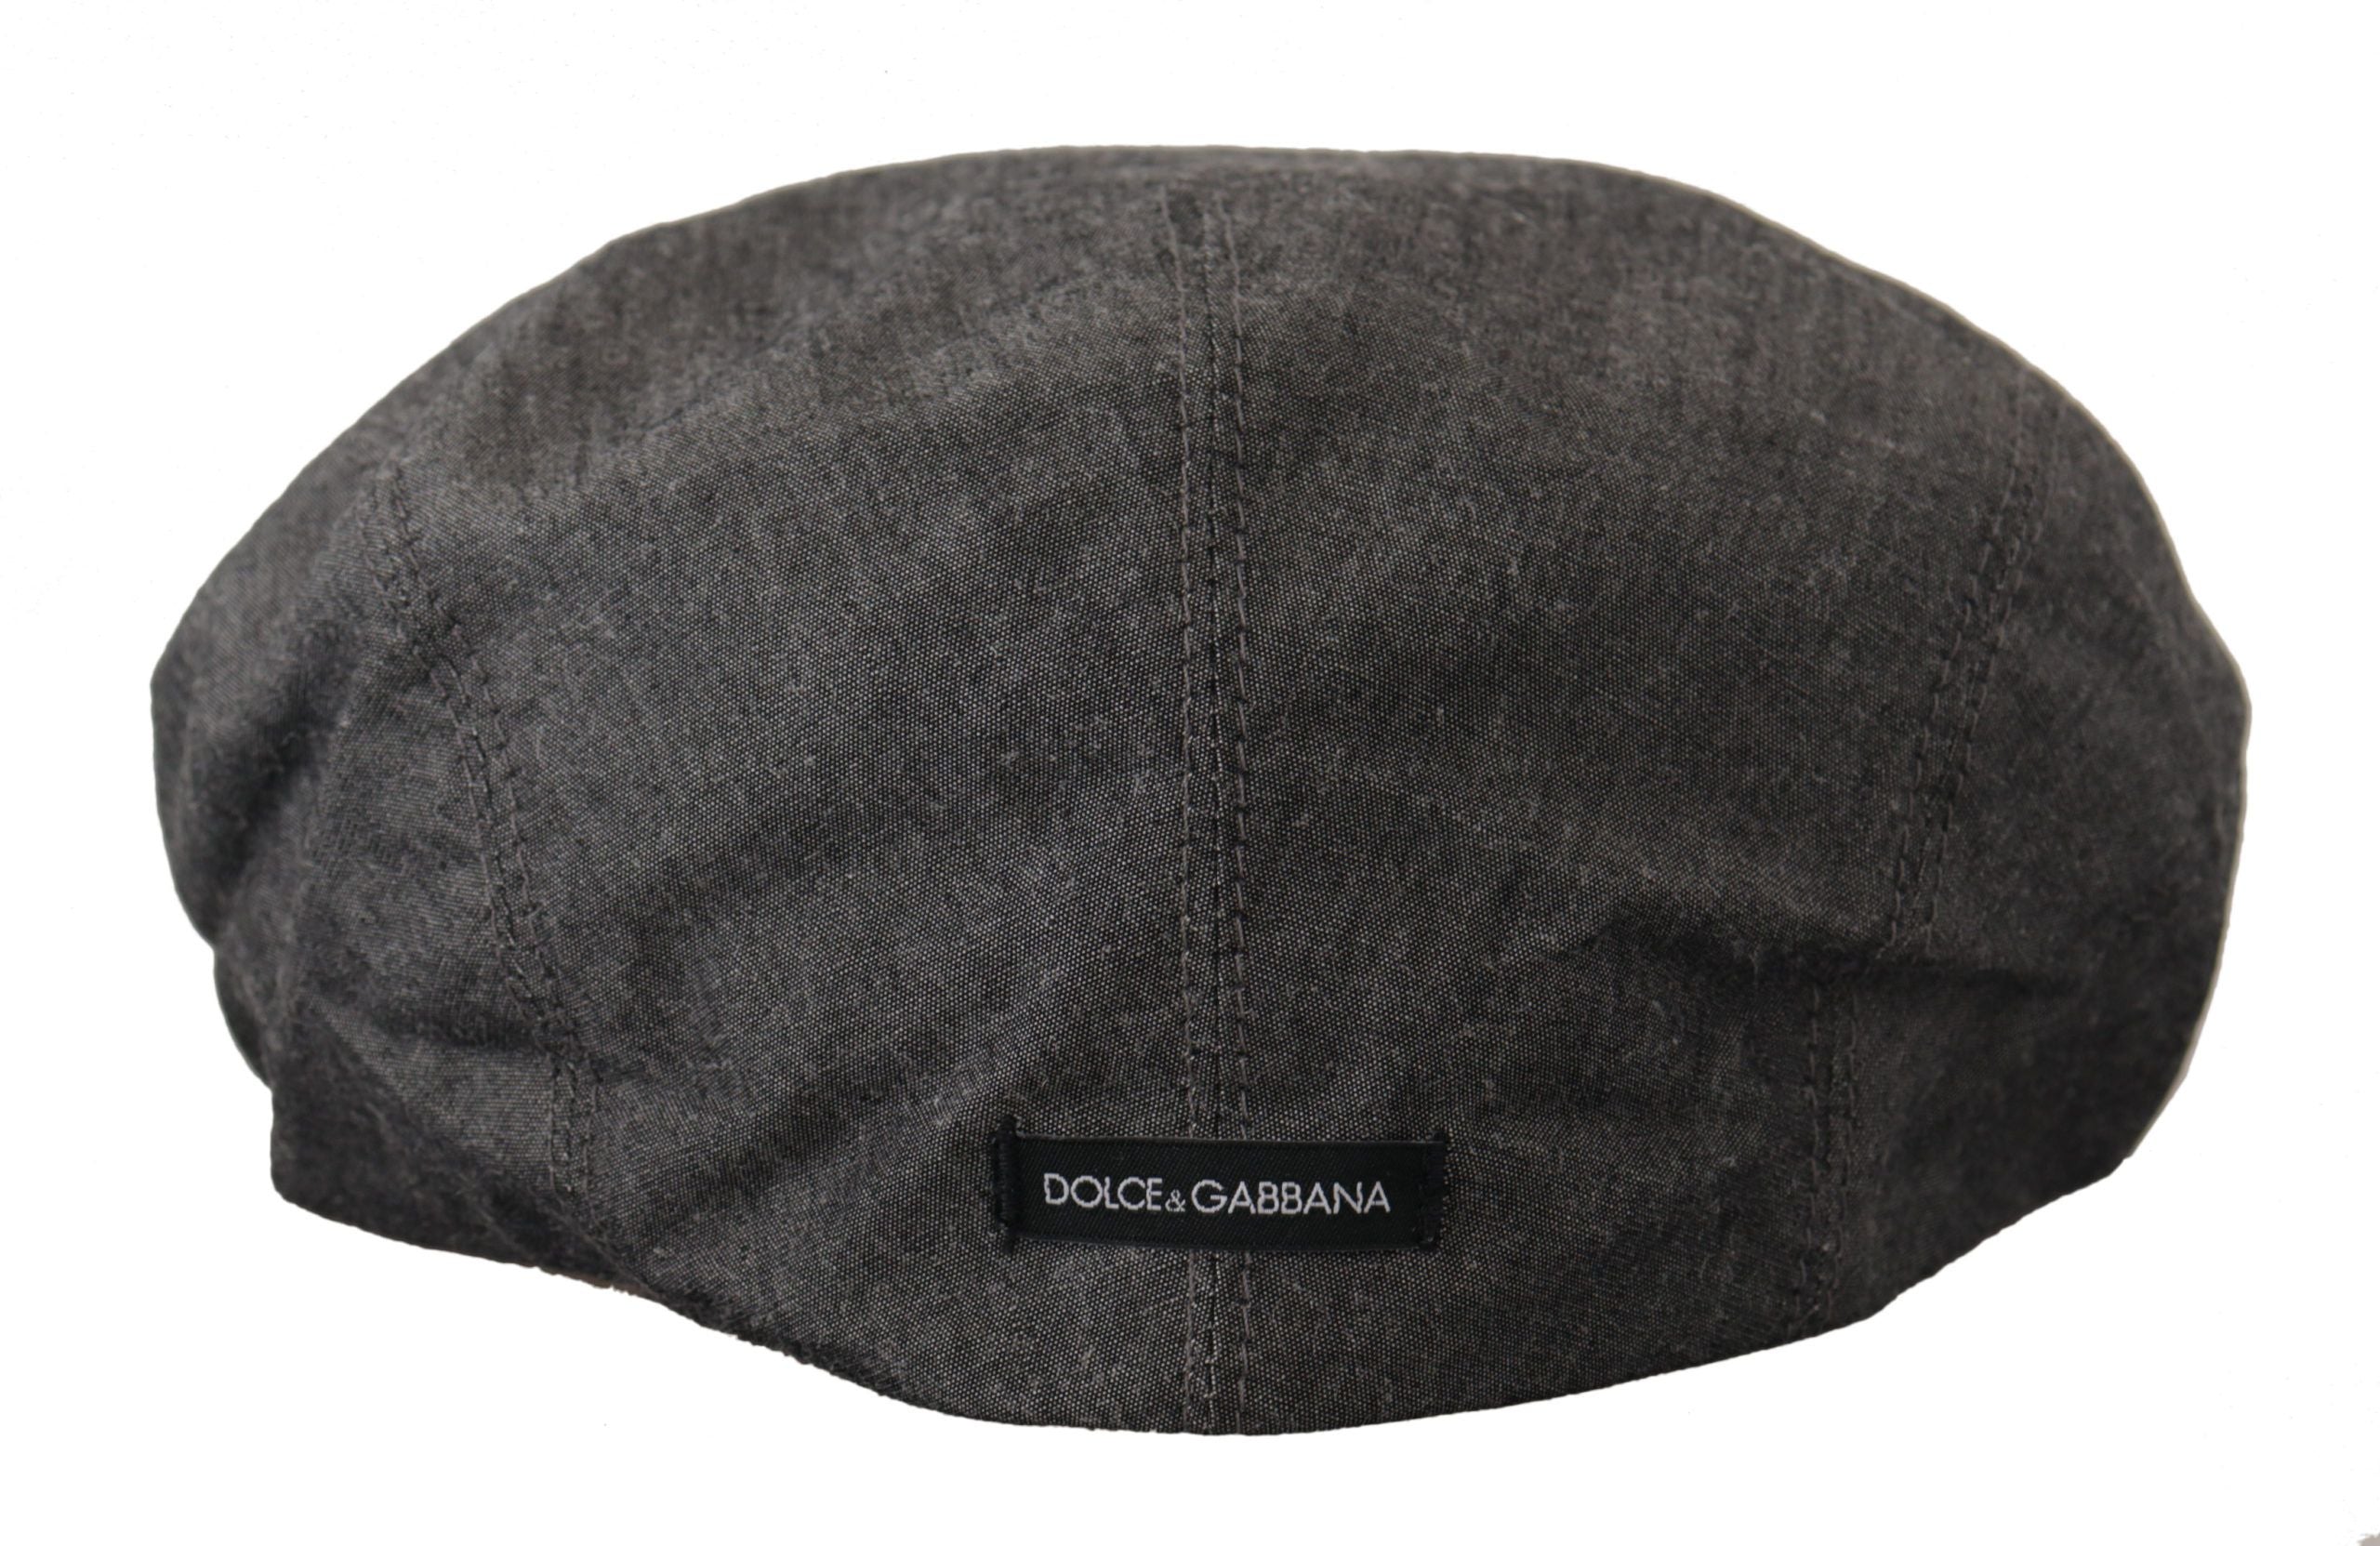 Dolce & Gabbana Gorro gris Newsboy Capello de mezcla de algodón para hombre